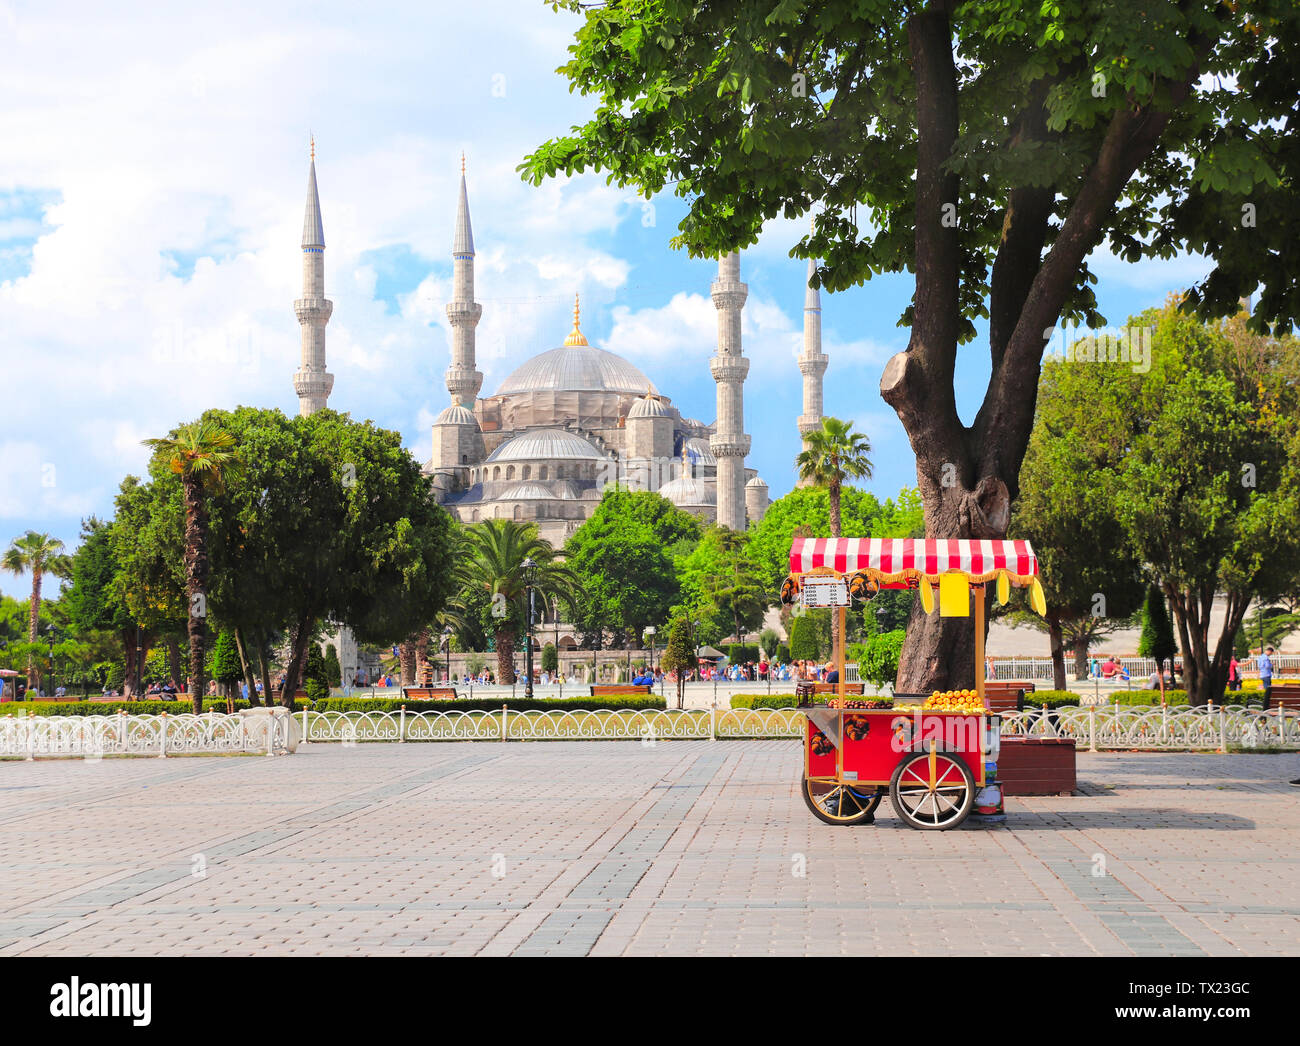 La moschea blu (Sultan Ahmet mosque) e tradizionale turca di castagno e carrello di mais, Piazza Sultanahmet, Istanbul, Turchia Foto Stock